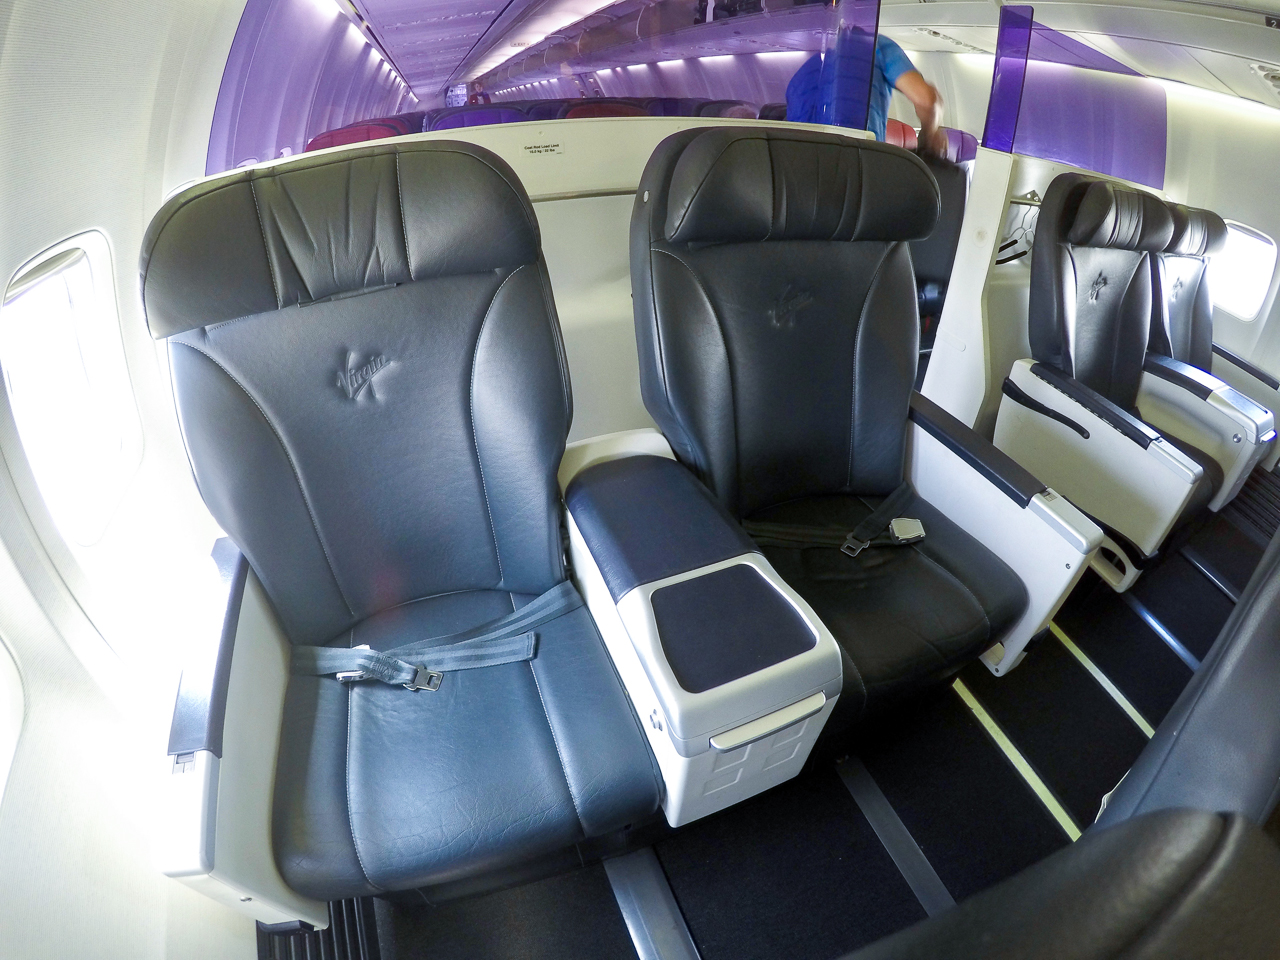 Virgin Australia Boeing 737 Business Class